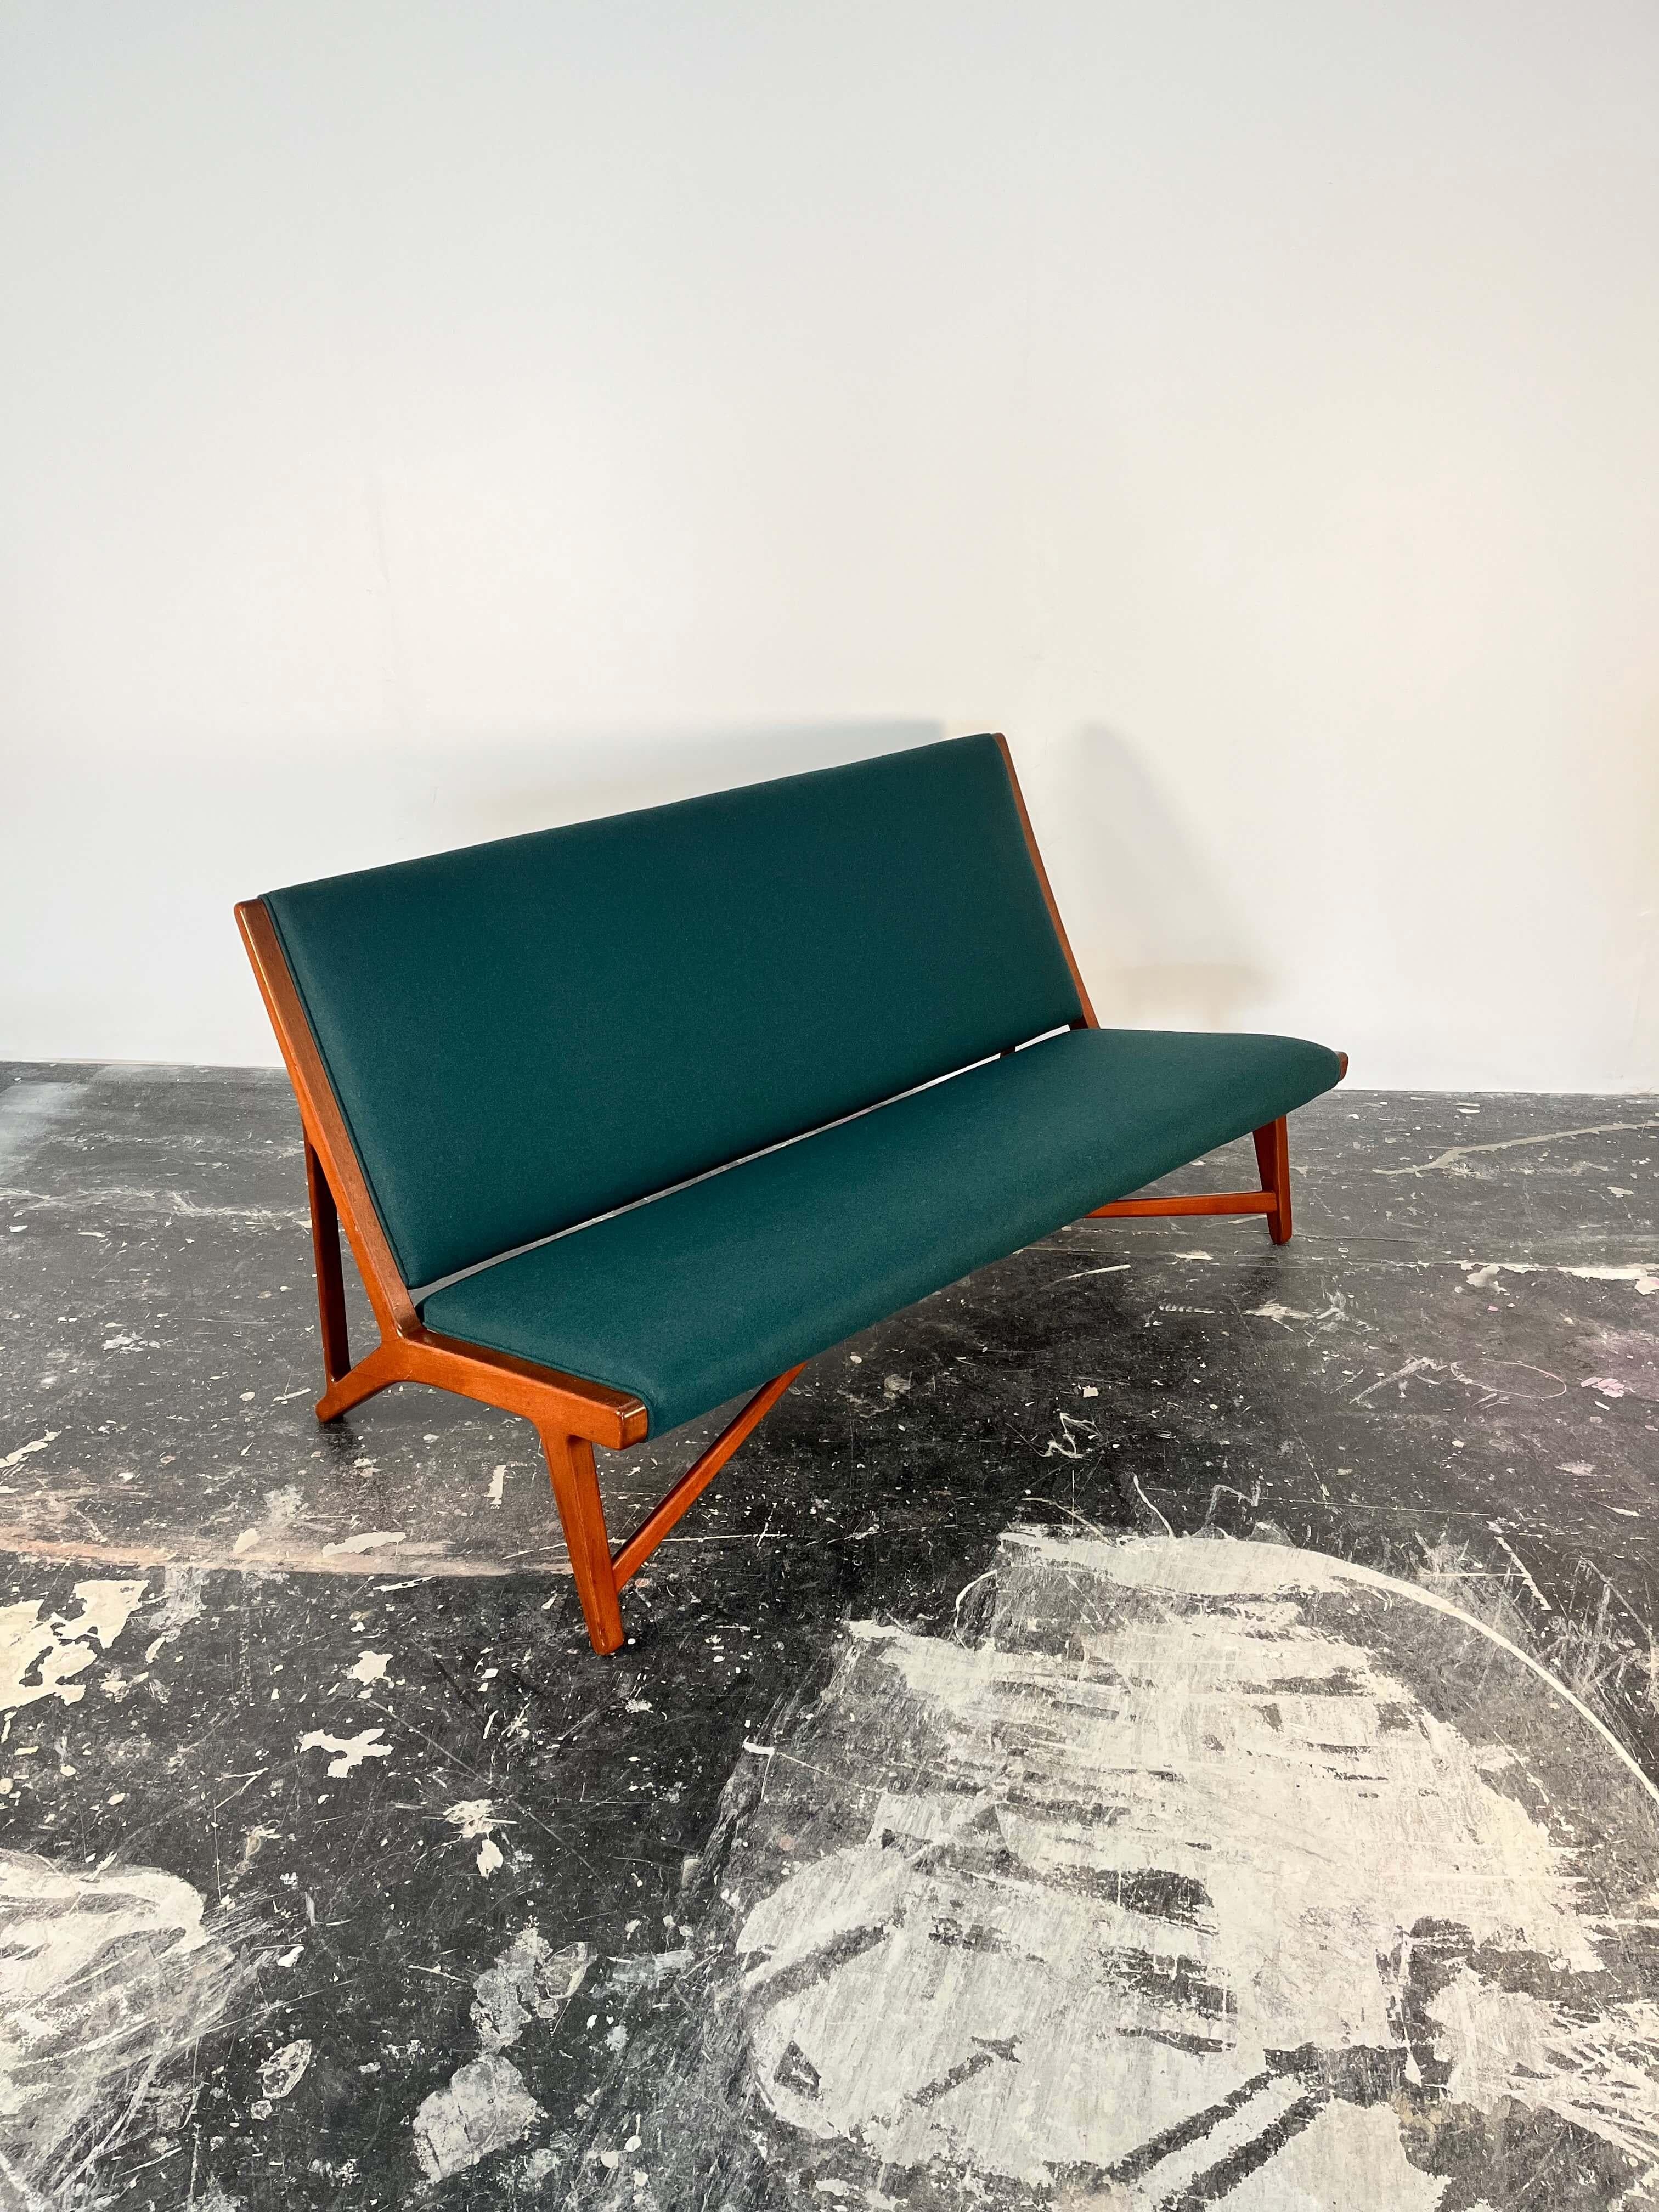 Wir freuen uns, Ihnen diese wunderschöne, seltene Hans J. Wegner Couch für Johannes Hansen, Modell JH 555, mit schräg gepolstertem Sitz und Rückenlehne, auf einem Teakholzsockel, in neuer, sattgrüner Wolle zu präsentieren. Herstellerstempel mit